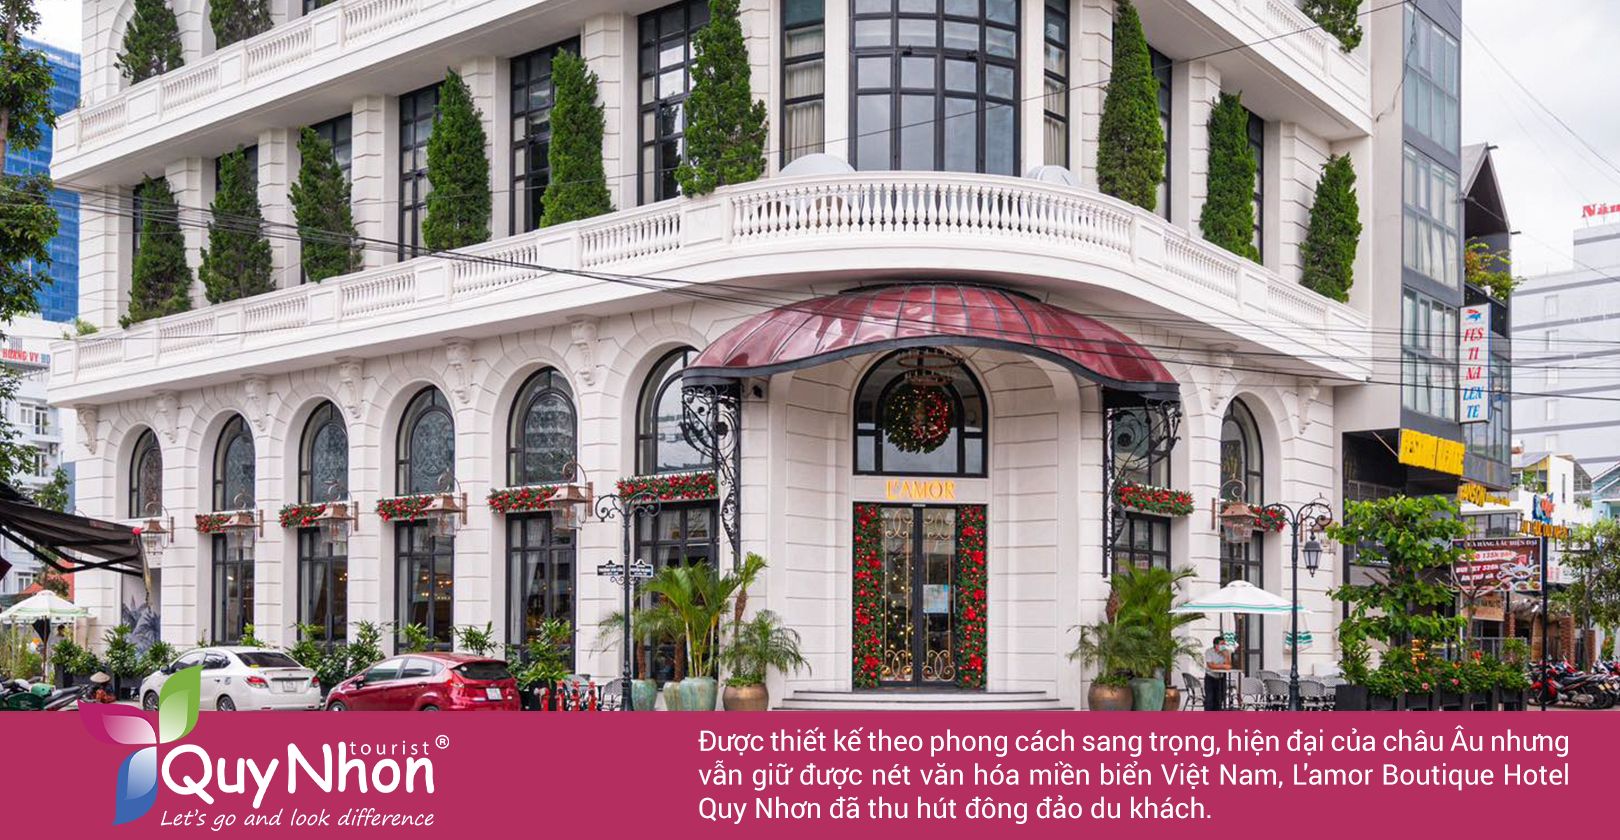 L'amor Boutique Hotel Quy Nhơn thu hút đông đảo du khách bởi vẻ đẹp sang trọng.